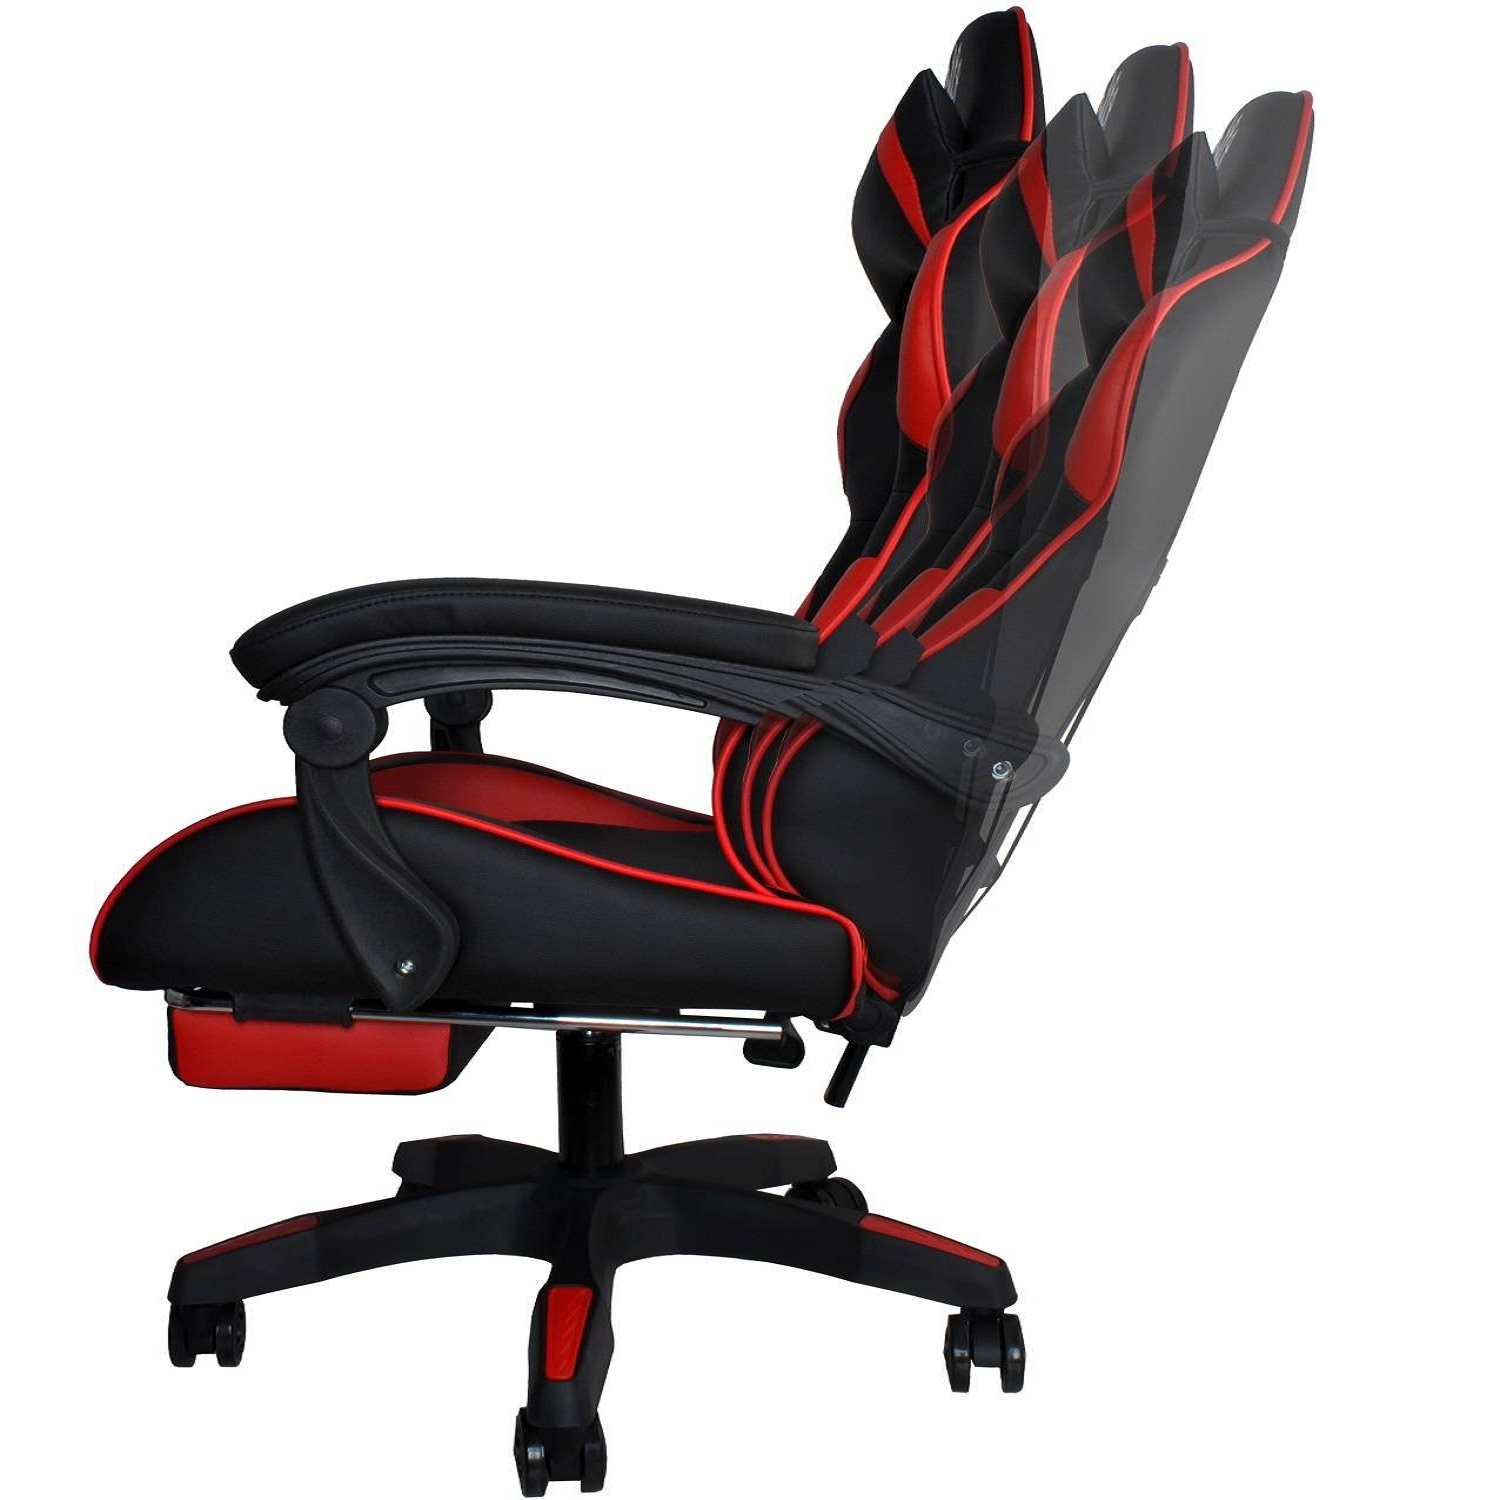 Gamer szék nyak-, és derékpárnával – kihúzható lábtartóval, magasságállítással – 124 x 63 x 63 cm, kék-piros (BB-8979) (3)